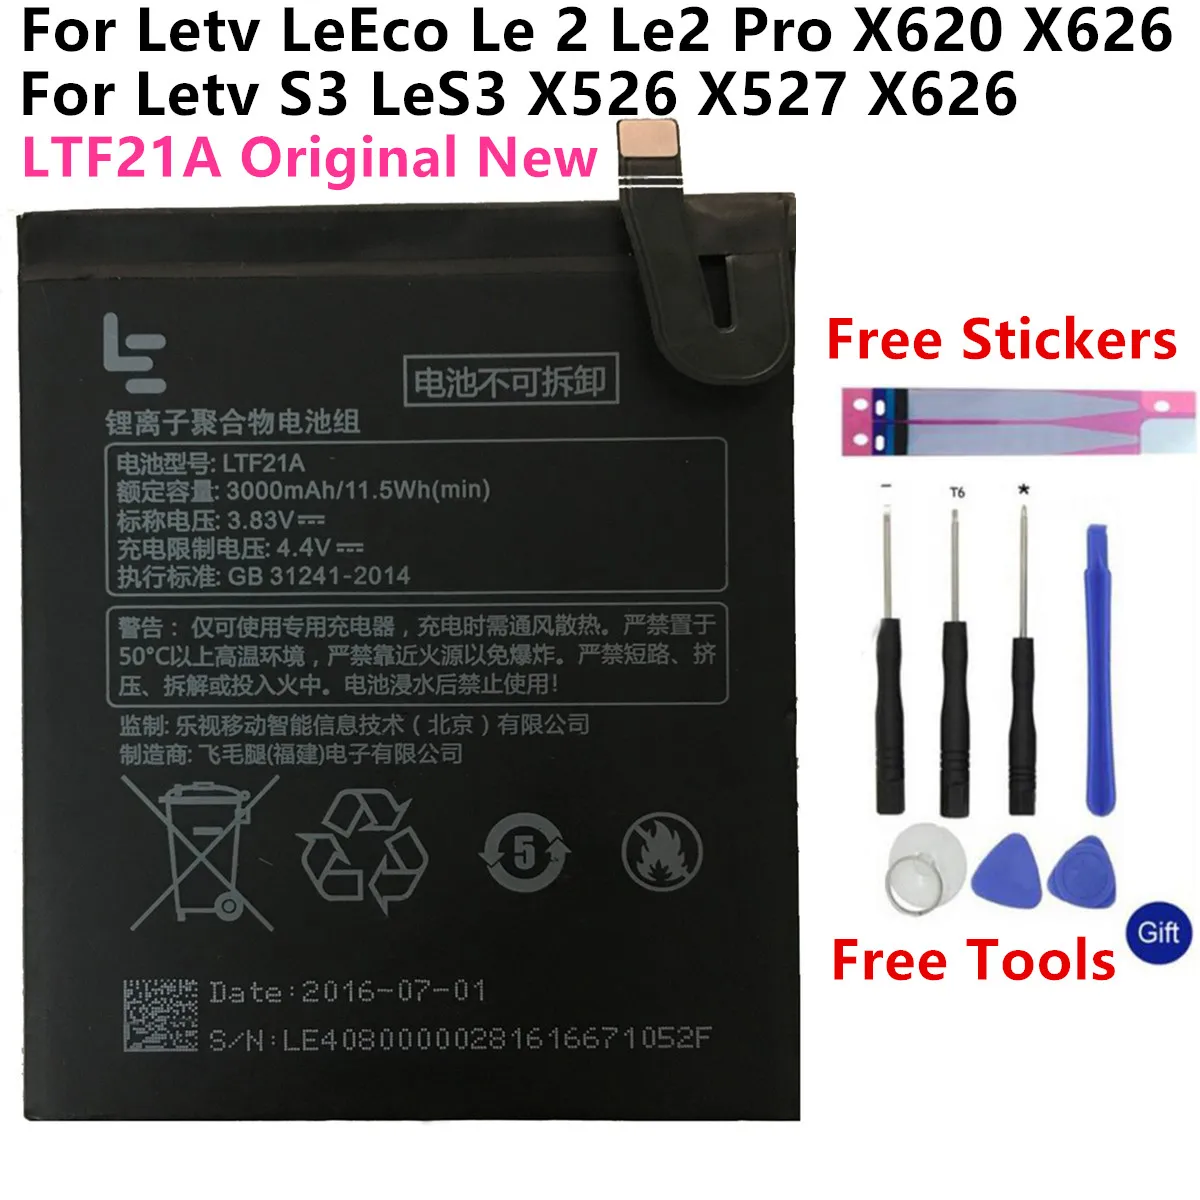 

3000mAh LTF21A Battery for Letv LeEco Le 2 X620 Battery Replacement LTF21A For Letv Le 2 Pro / Letv X526 Replacement Battery